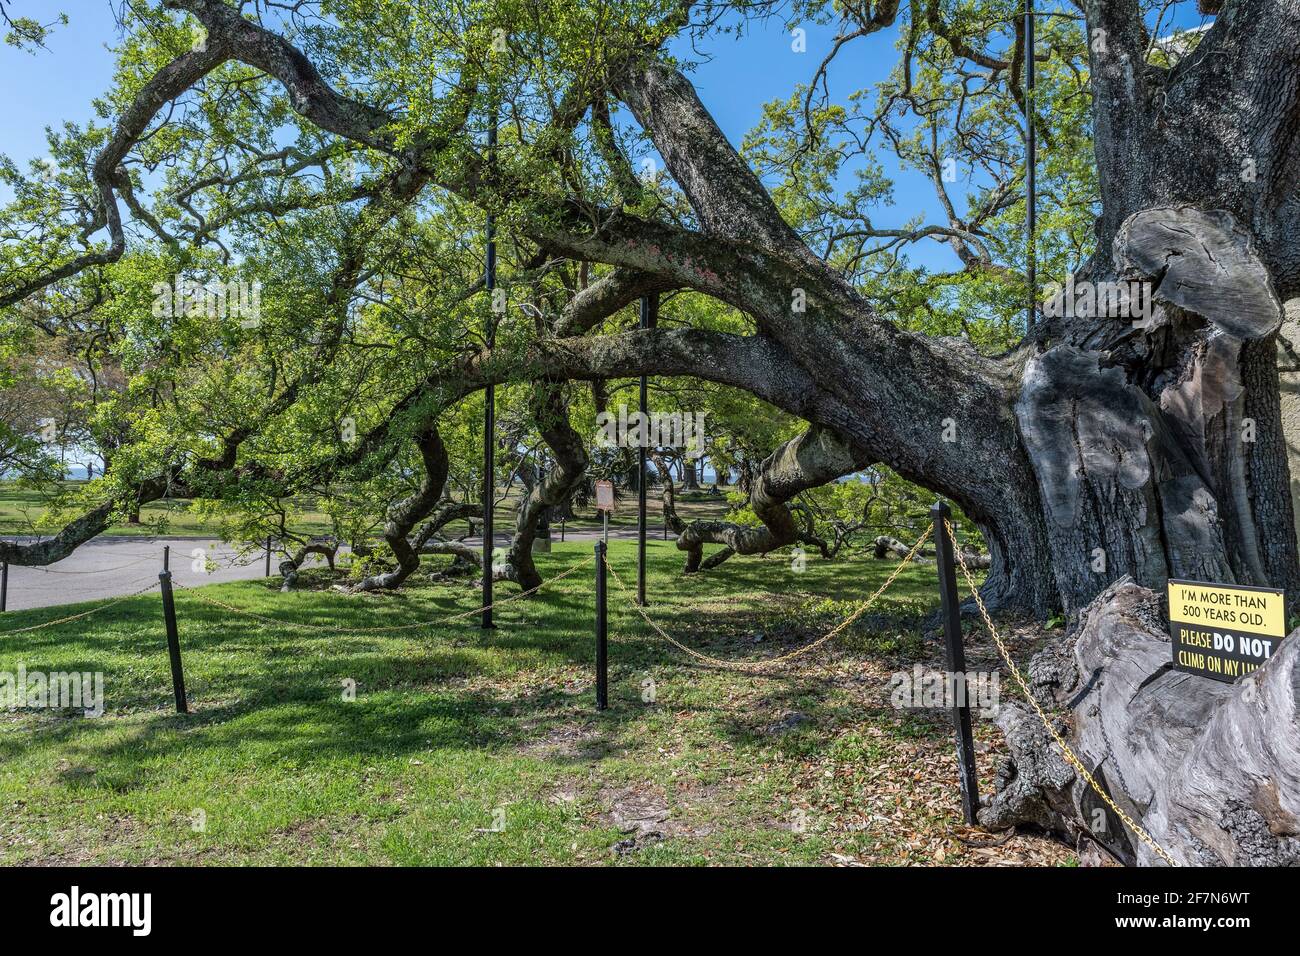 Historische Friendship Oak Tree, südliche lebende Eiche, die auf dem Campus der University of Southern Mississippi, Long Beach, MS, USA, 500 Jahre alt sein soll. Stockfoto